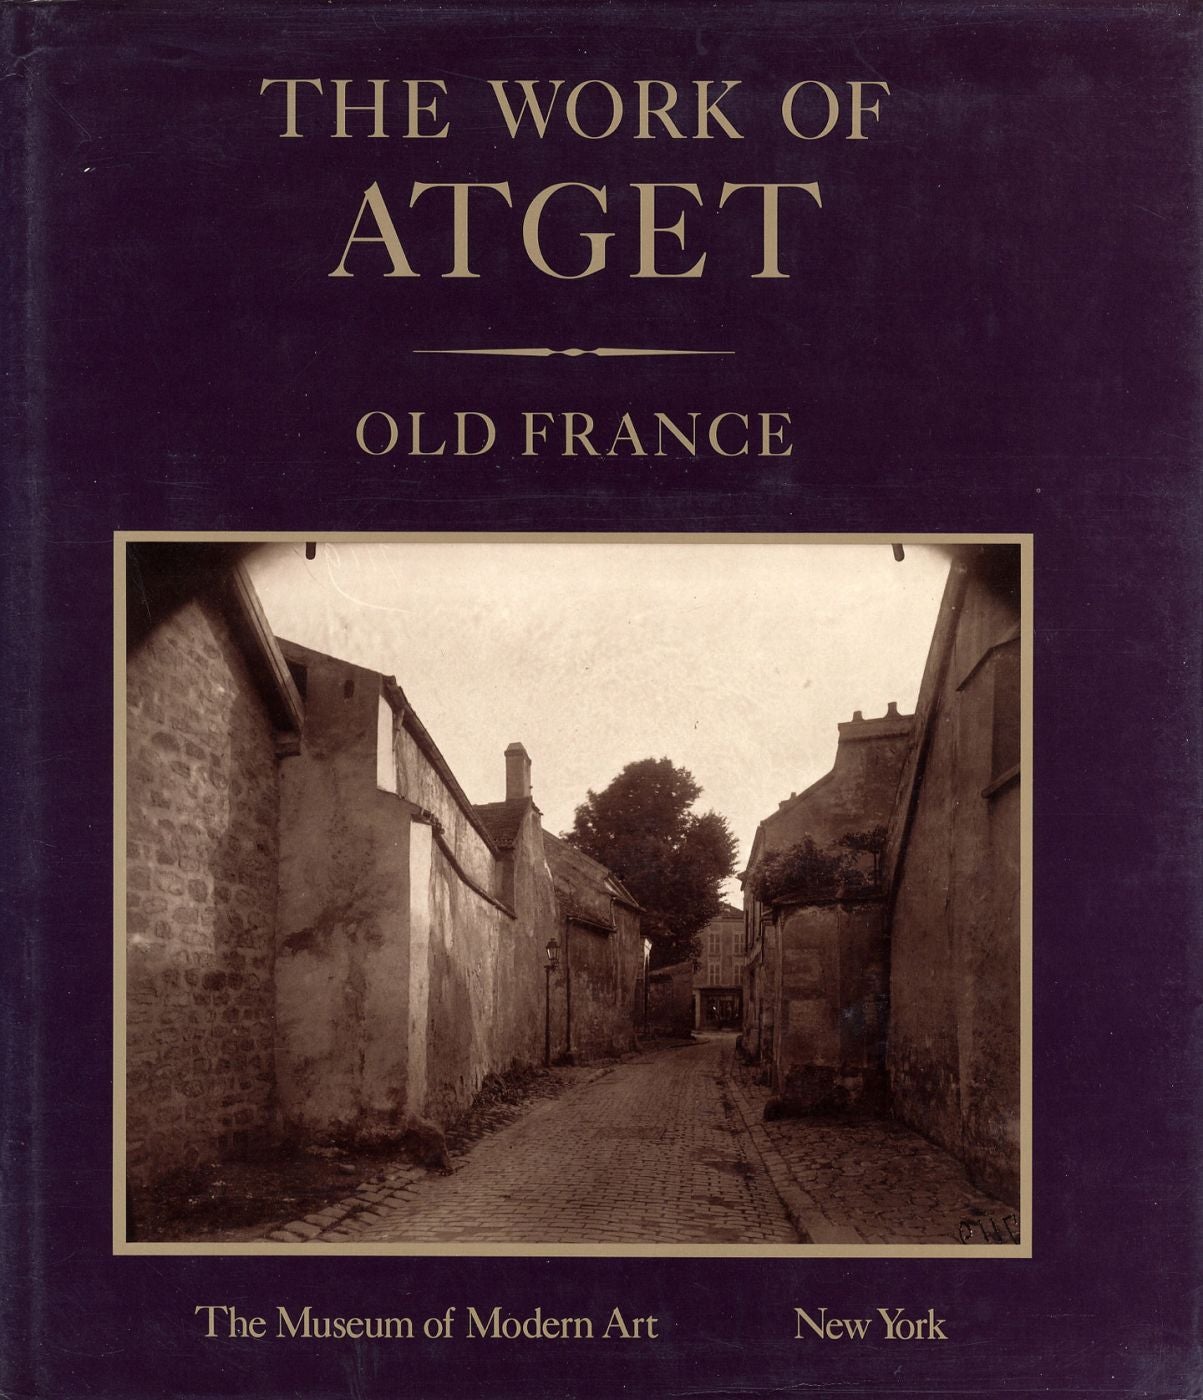 The Work of Atget, Volume I: Old France